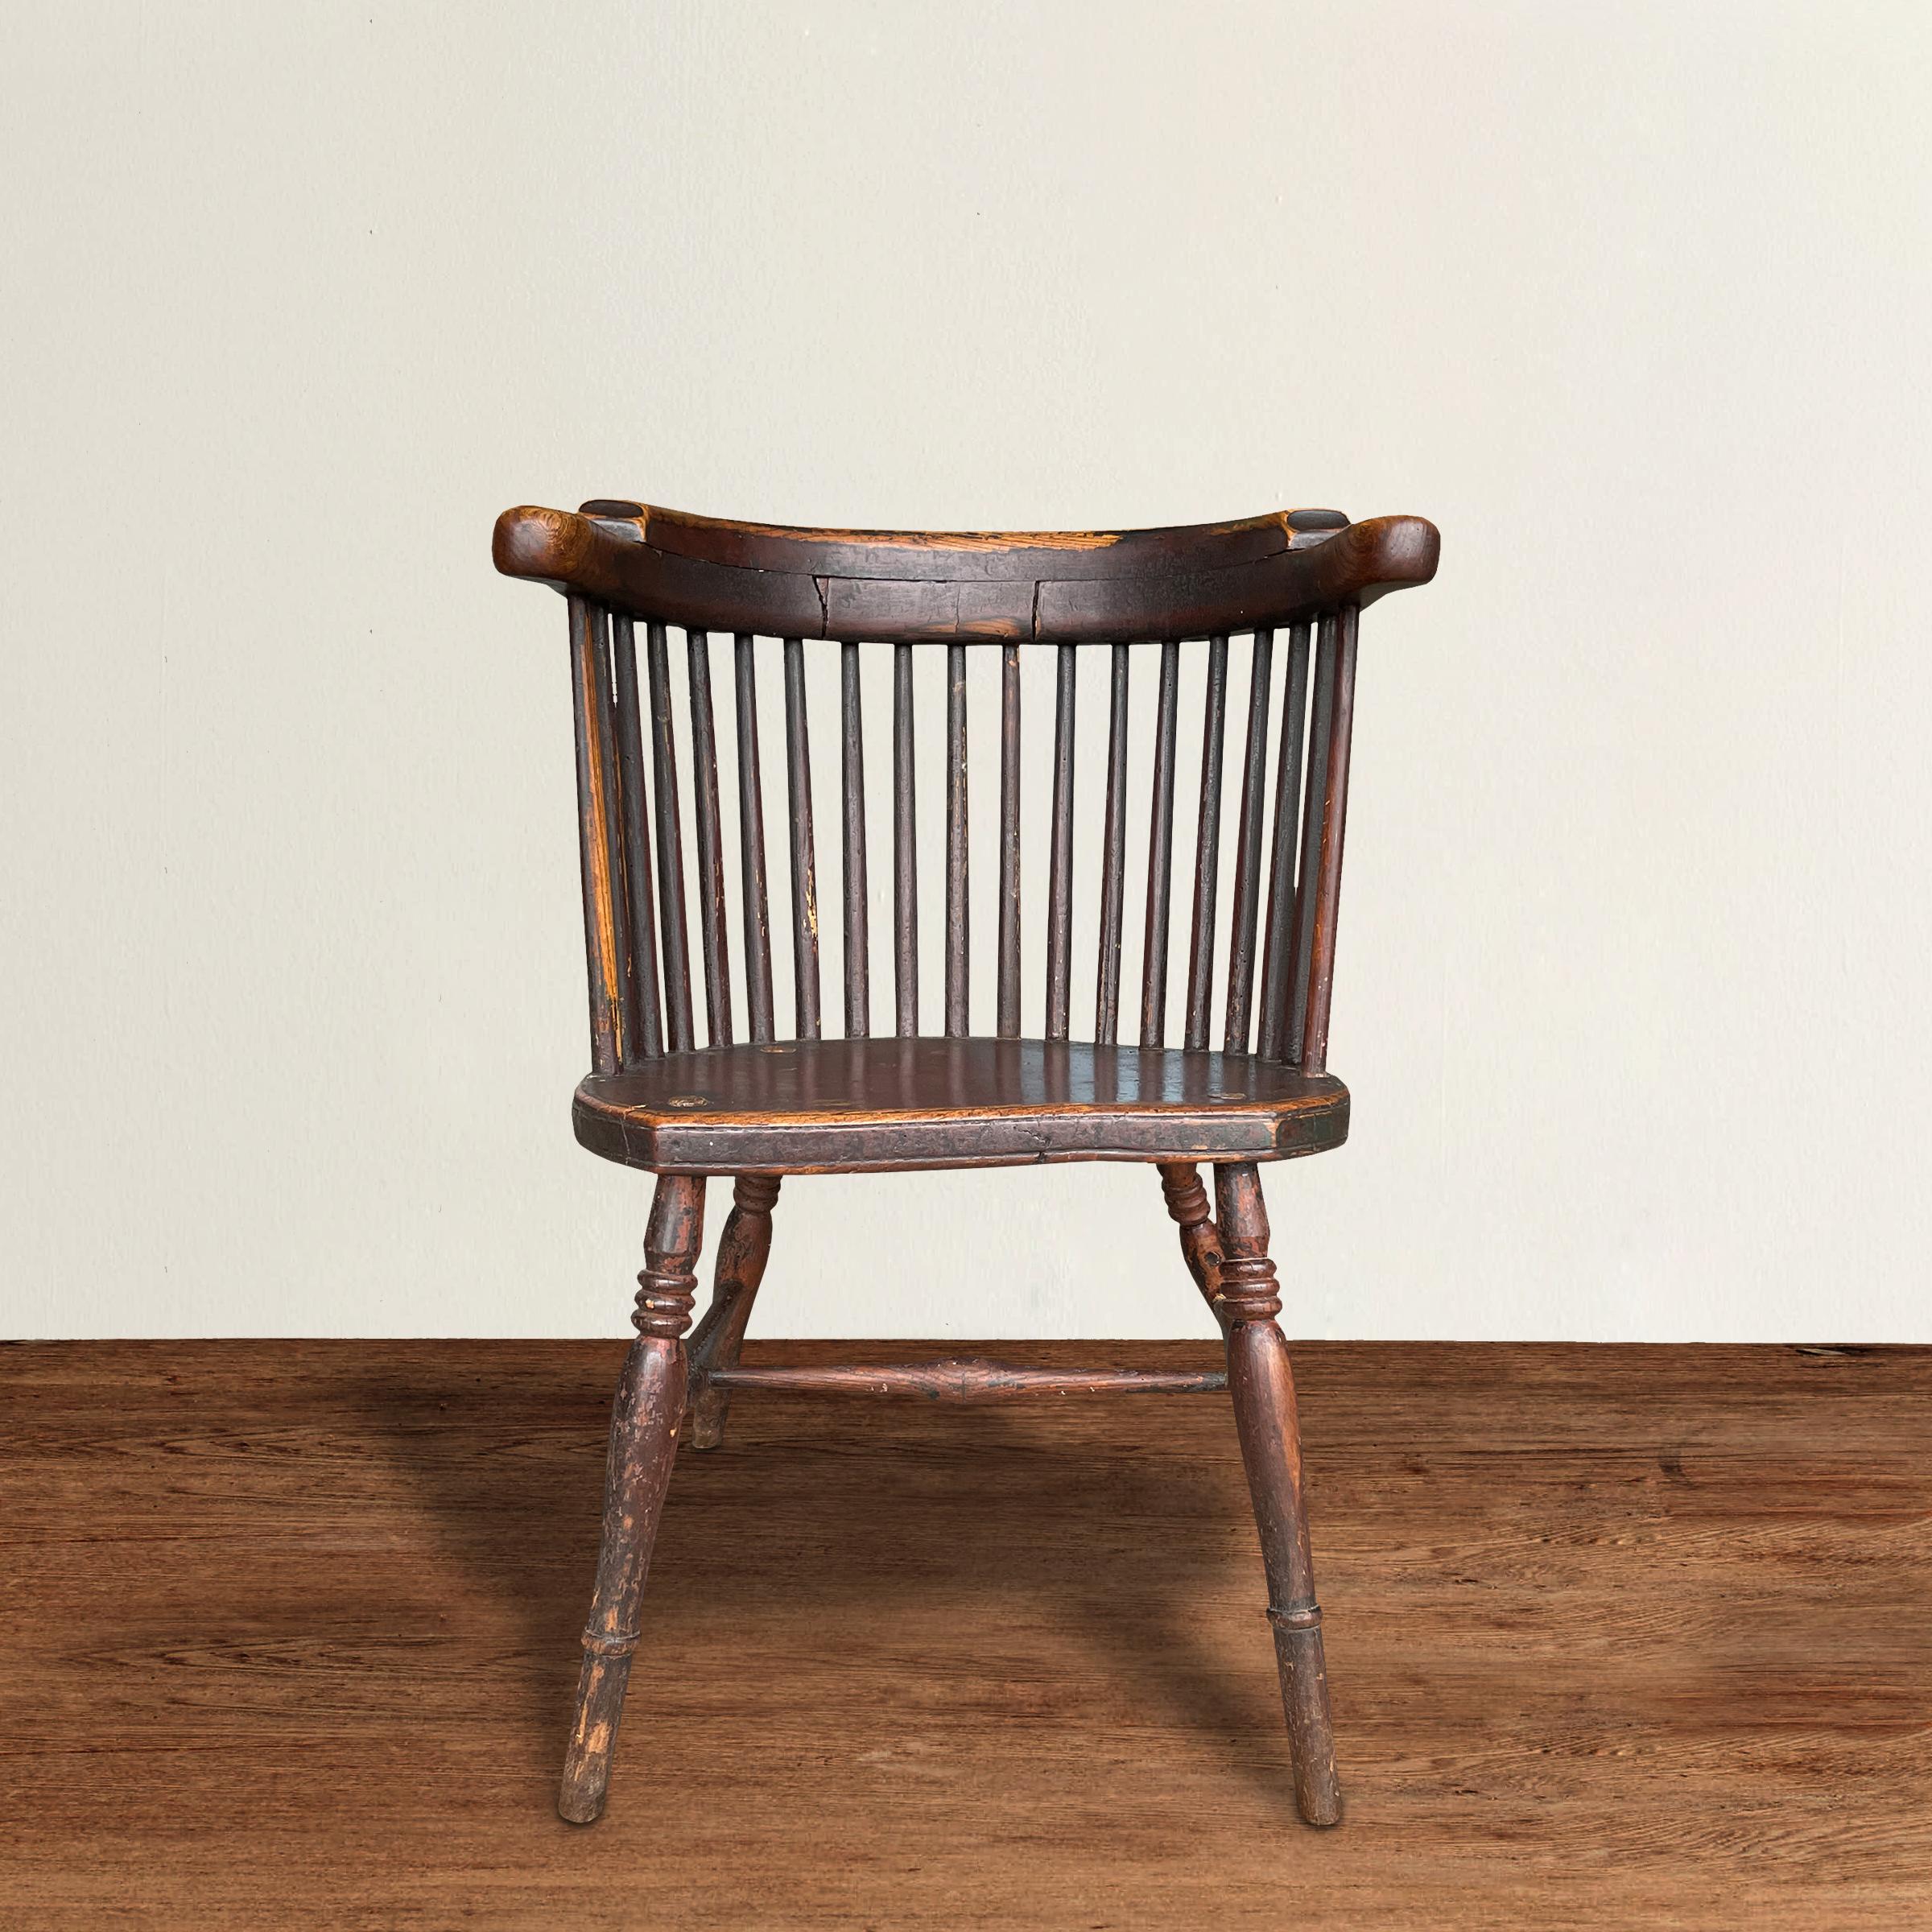 Ein liebenswerter englischer Barrelback-Windsor-Sessel aus dem 19. Jahrhundert mit einer anmutigen, von mehreren Spindeln getragenen, abgerundeten Kammschiene, einem stabilen Sattelsitz, gespreizten, gedrechselten Beinen und unter Beibehaltung der